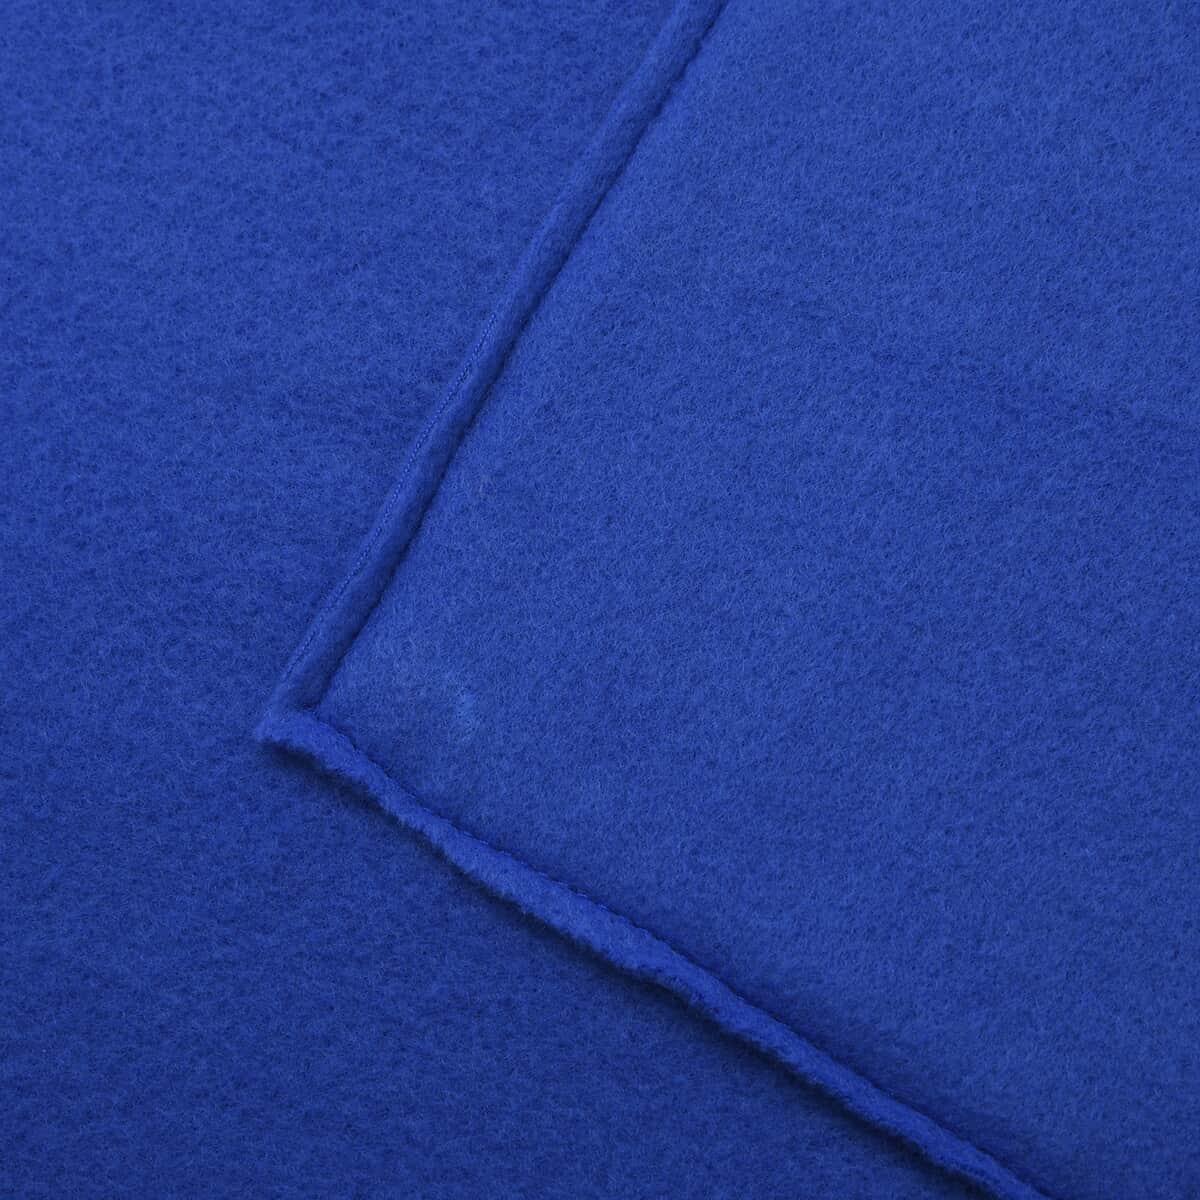 Homesmart 2 in 1 Blue Solid Fleece Travel Blanket with Folded Storage Pocket (Microfiber) image number 2